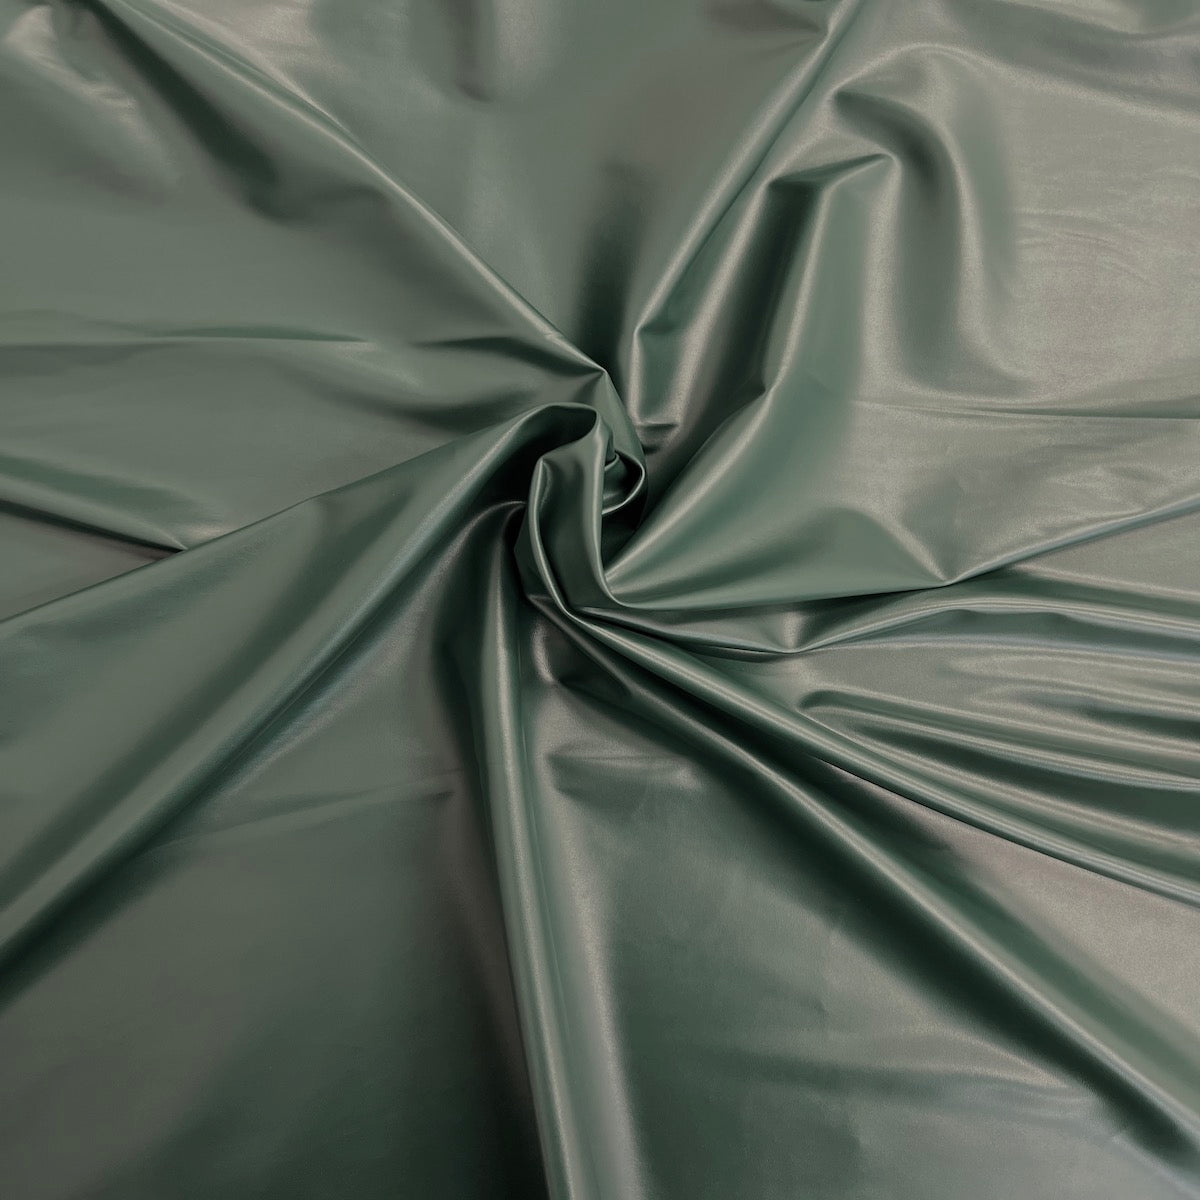 Tela de vinilo de cuero sintético elástico bidireccional verde cazador 